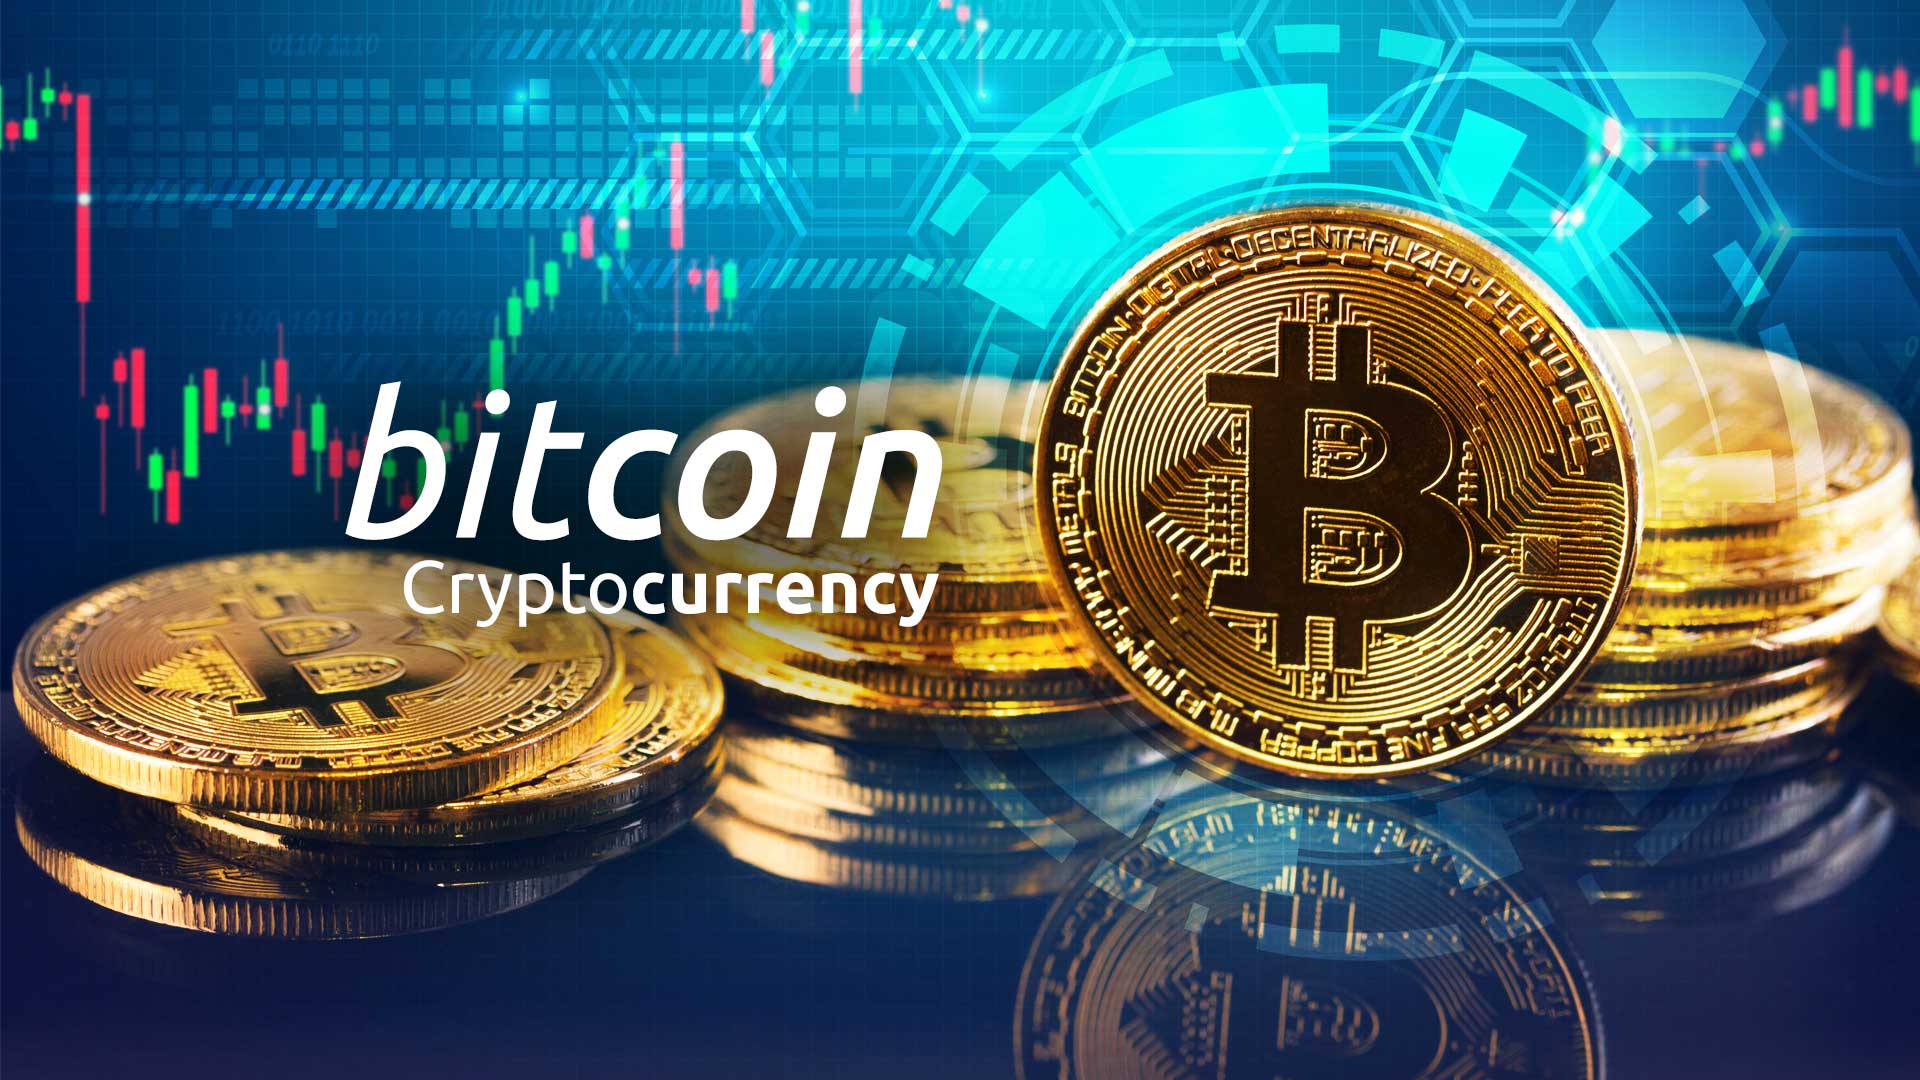 Giá Bitcoin hôm nay là bao nhiêu? Biểu đồ giá Bitcoin trực tuyến mới nhất